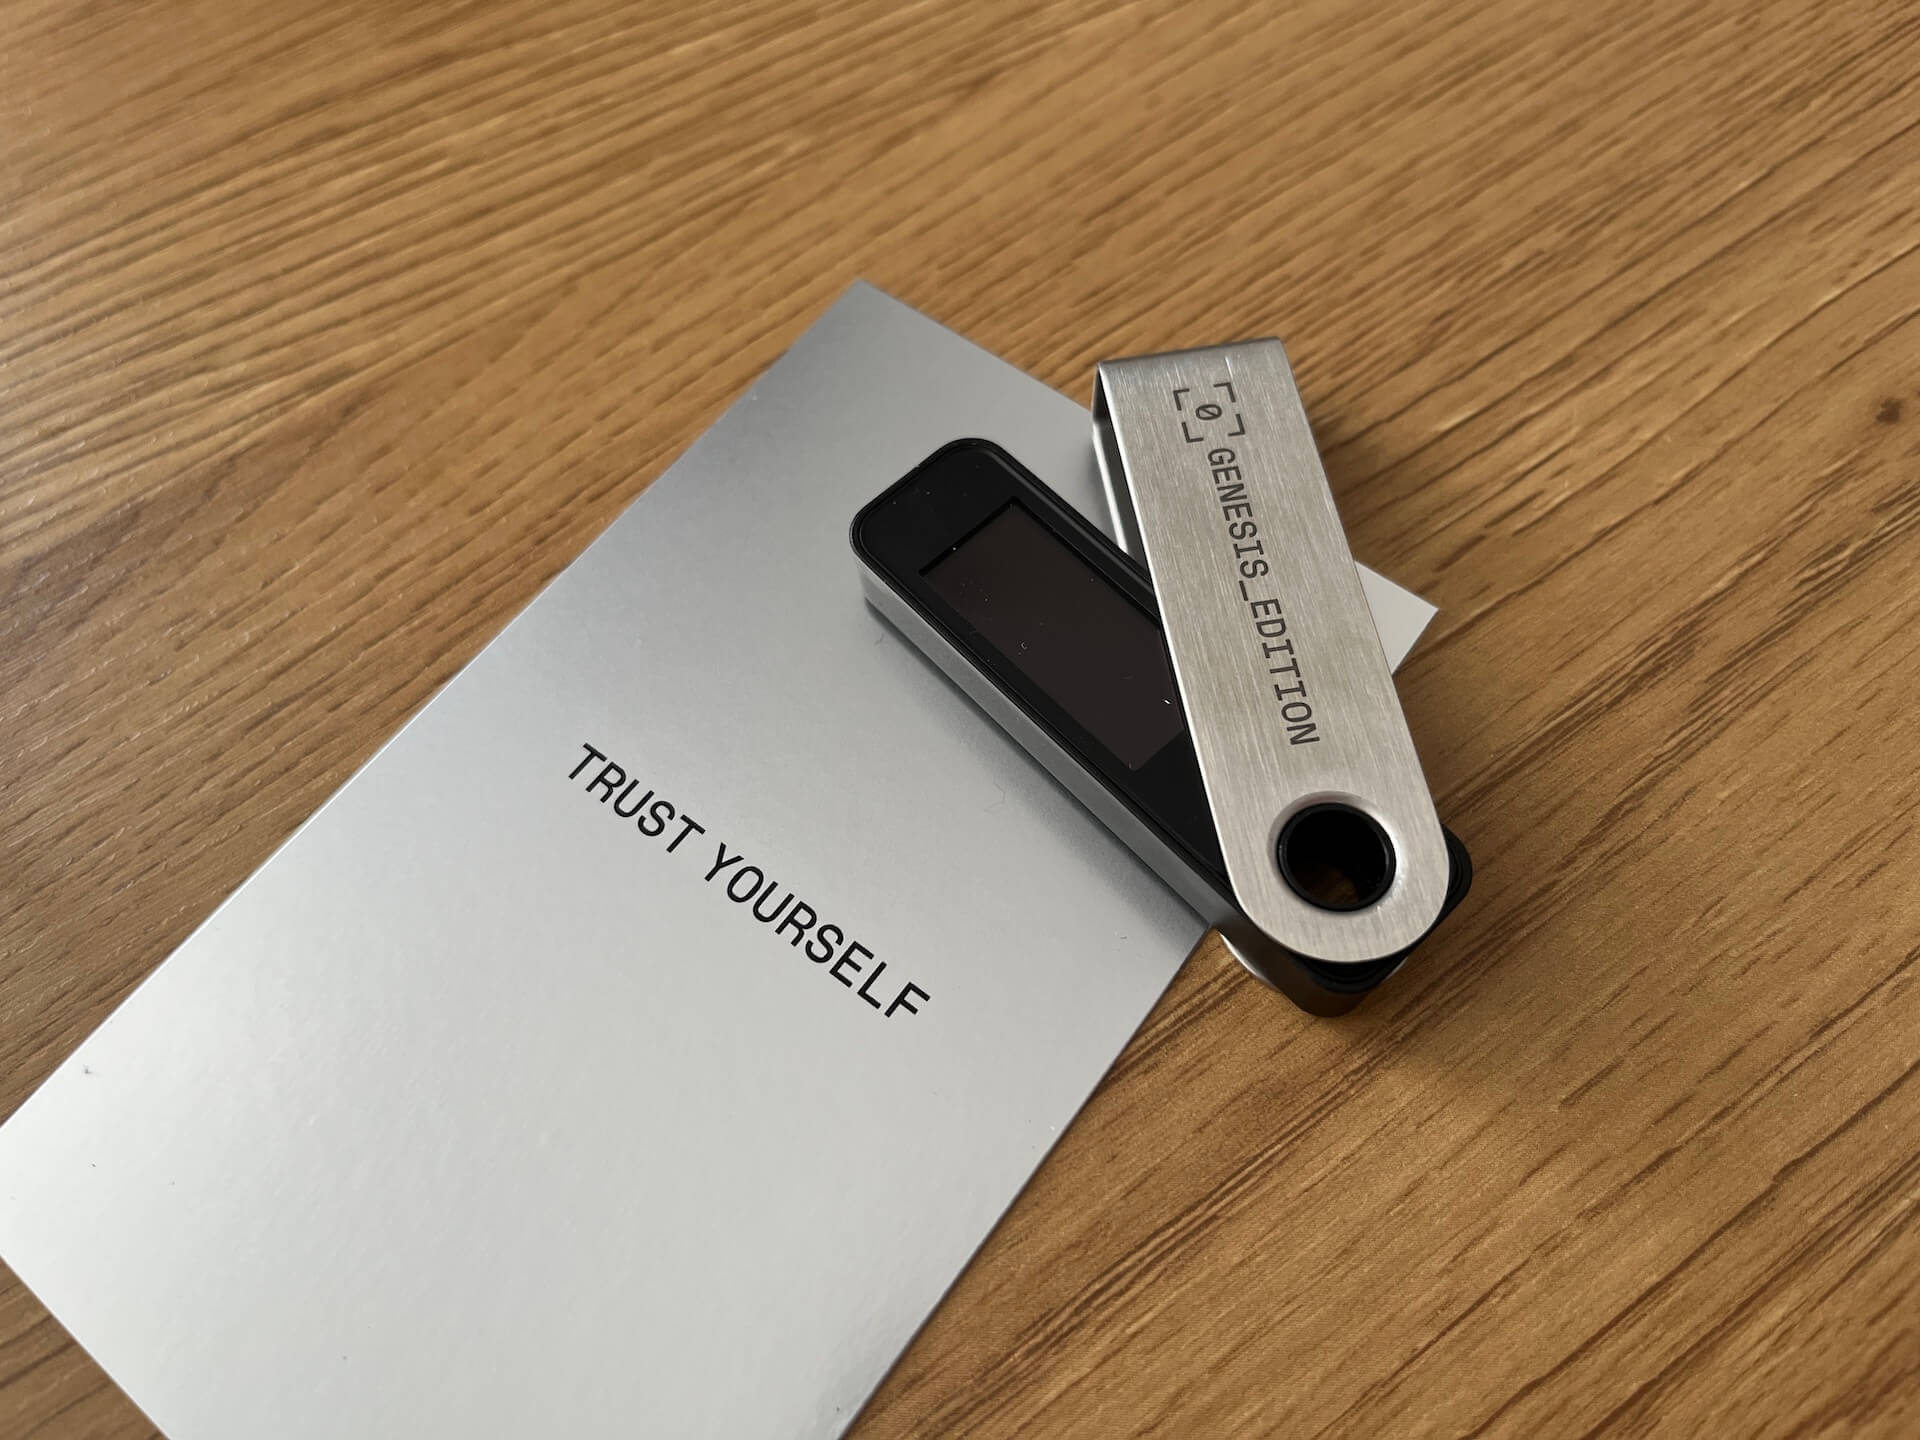 Мошенники распространяют вредоносные приложения под видом криптовалютных ботов. О чём идёт речь? Аппаратный кошелёк Ledger Nano S Plus Genesis Edition. Фото.